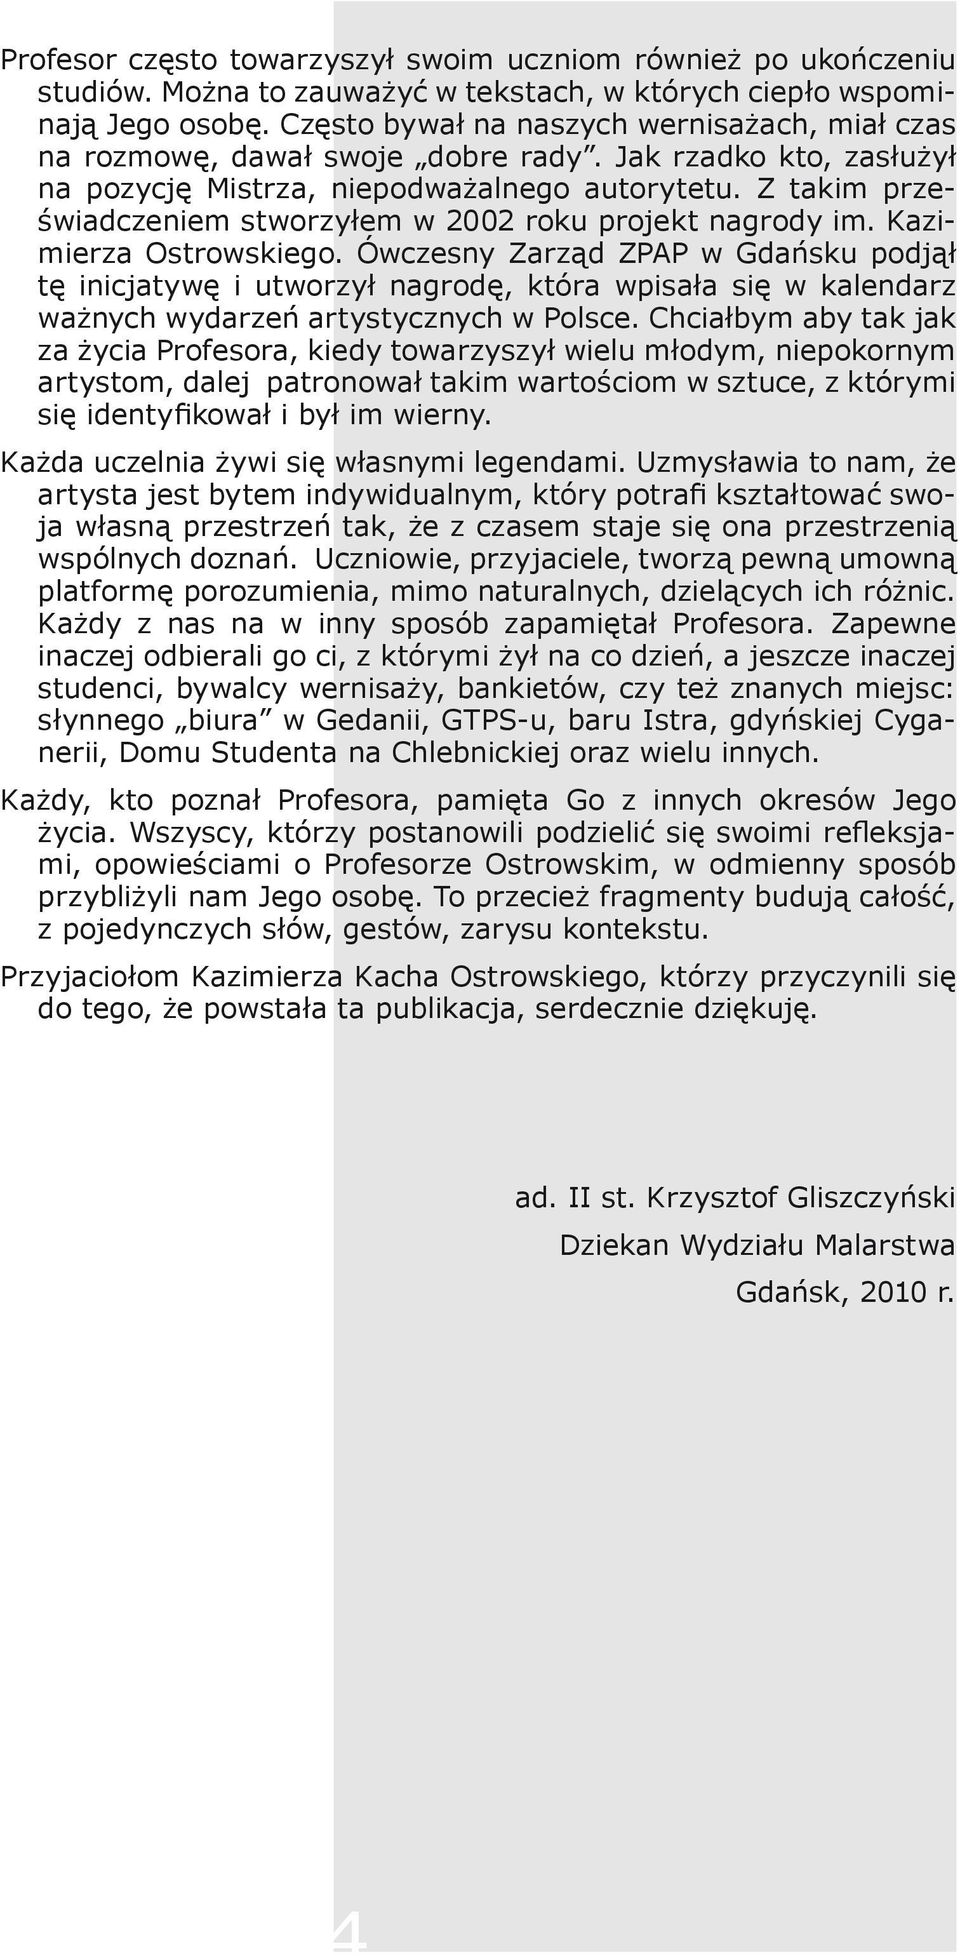 Z takim przeświadczeniem stworzyłem w 2002 roku projekt nagrody im. Kazimierza Ostrowskiego.